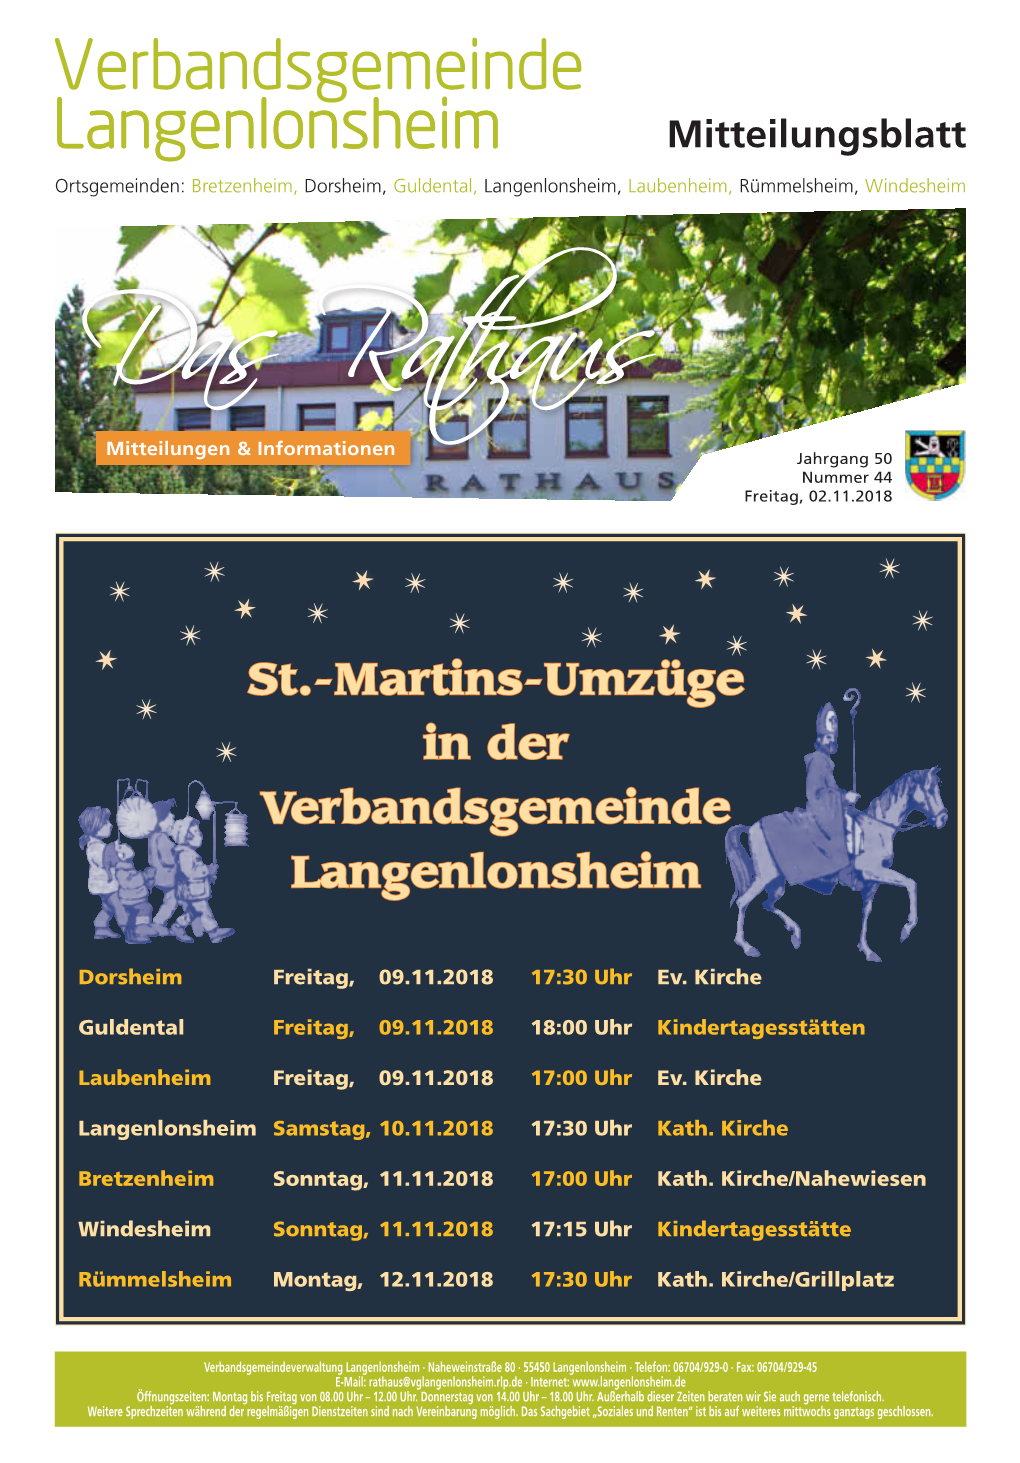 St.-Martins-Umzüge in Der Verbandsgemeinde Langenlonsheim